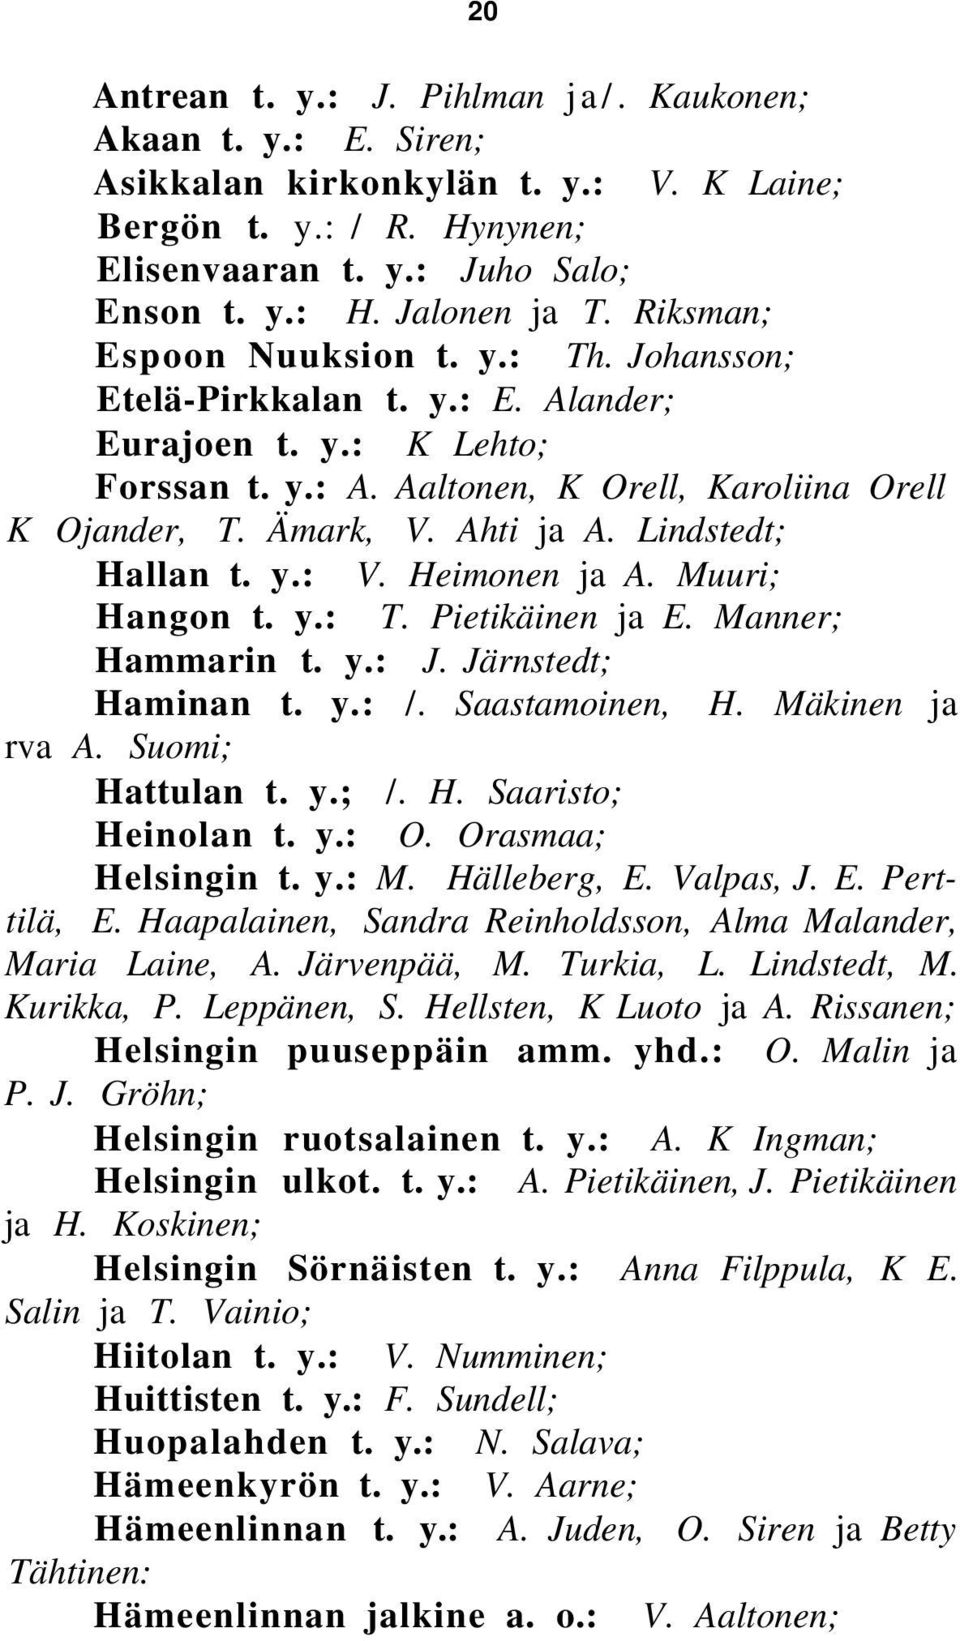 Lindstedt; Hallan t. y.: V. Heimonen ja A. Muuri; Hangon t. y.: T. Pietikäinen ja E. Manner; Hammarin t. y.: J. Järnstedt; Haminan t. y.: /. Saastamoinen, H. Mäkinen ja rva A. Suomi; Hattulan t. y.; /.